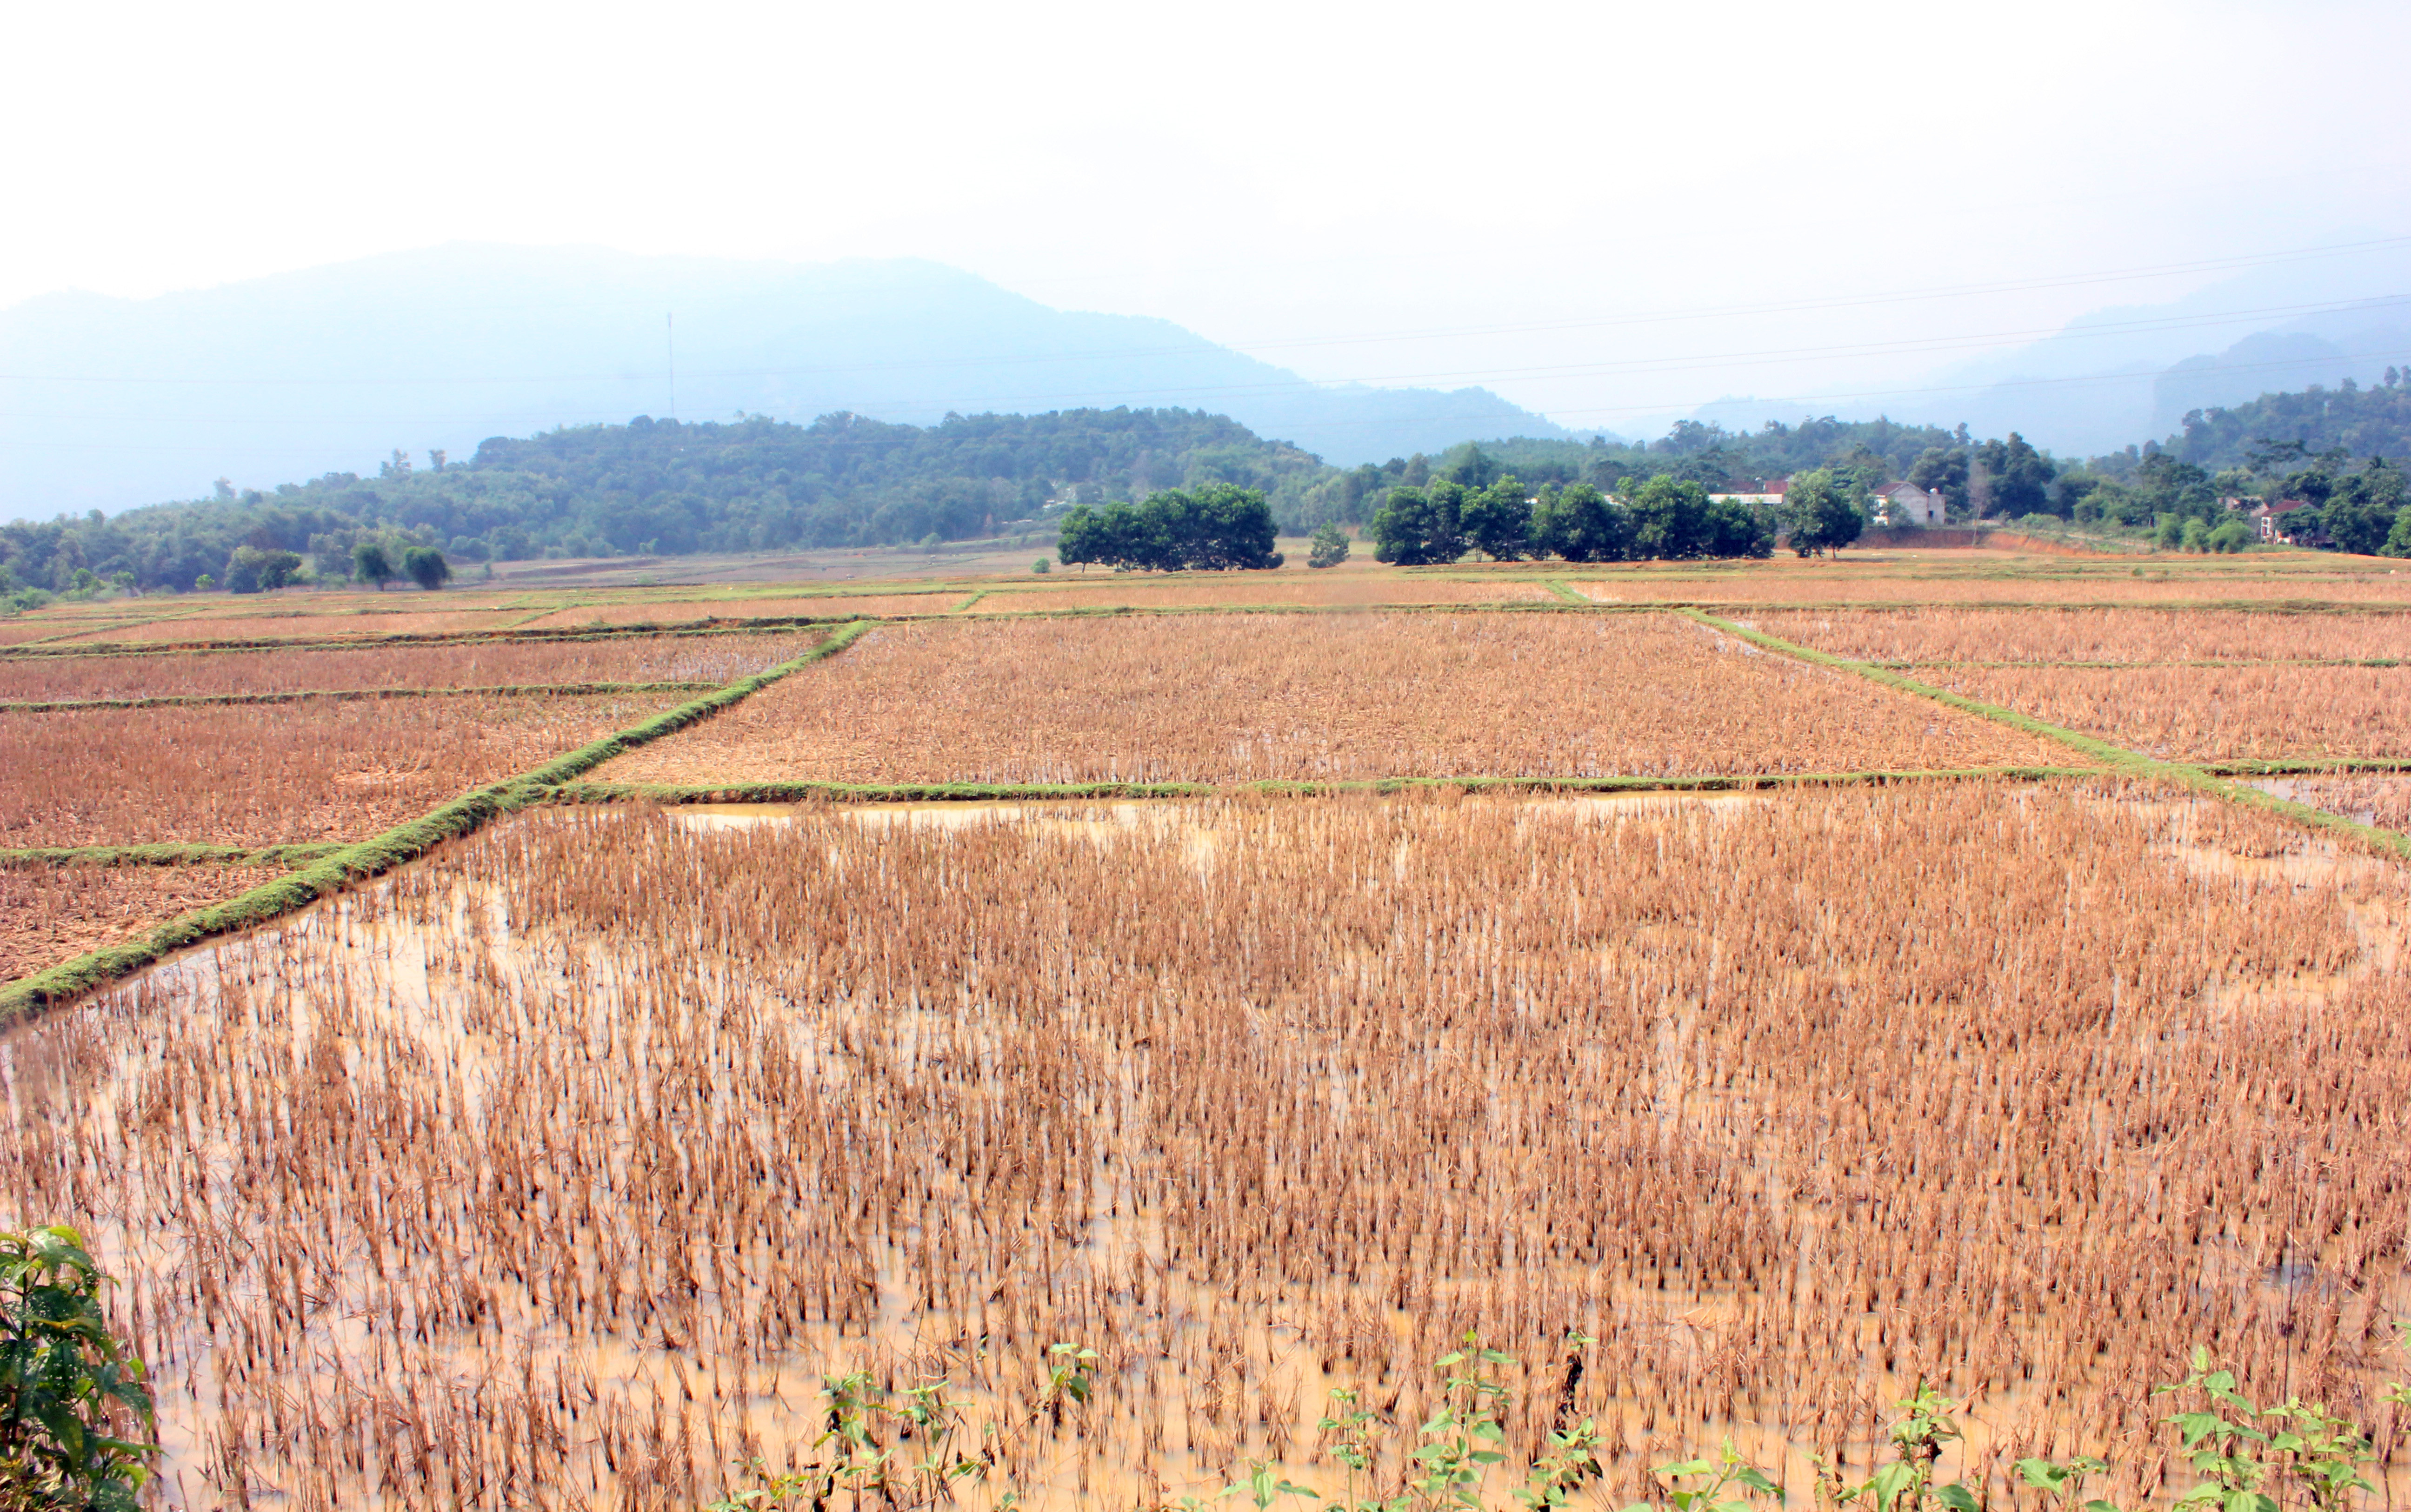 Ruộng đất ở vùng tái định cư của người dân Đan Lai mỗi năm sản xuất 2 vụ lúa. Bên cạnh đó vì không đủ nước để gieo trồng nên bỏ hoang. Ảnh: Tường Vi 